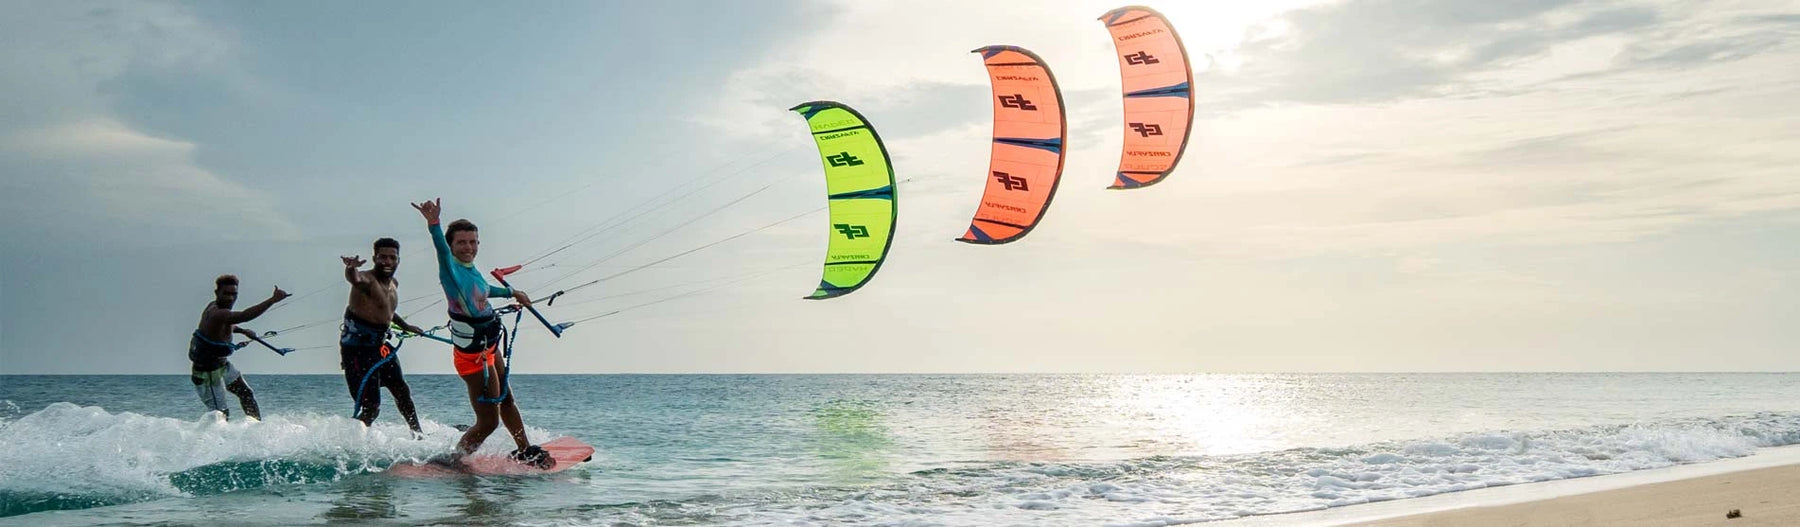 kitesurfing gear for men and women